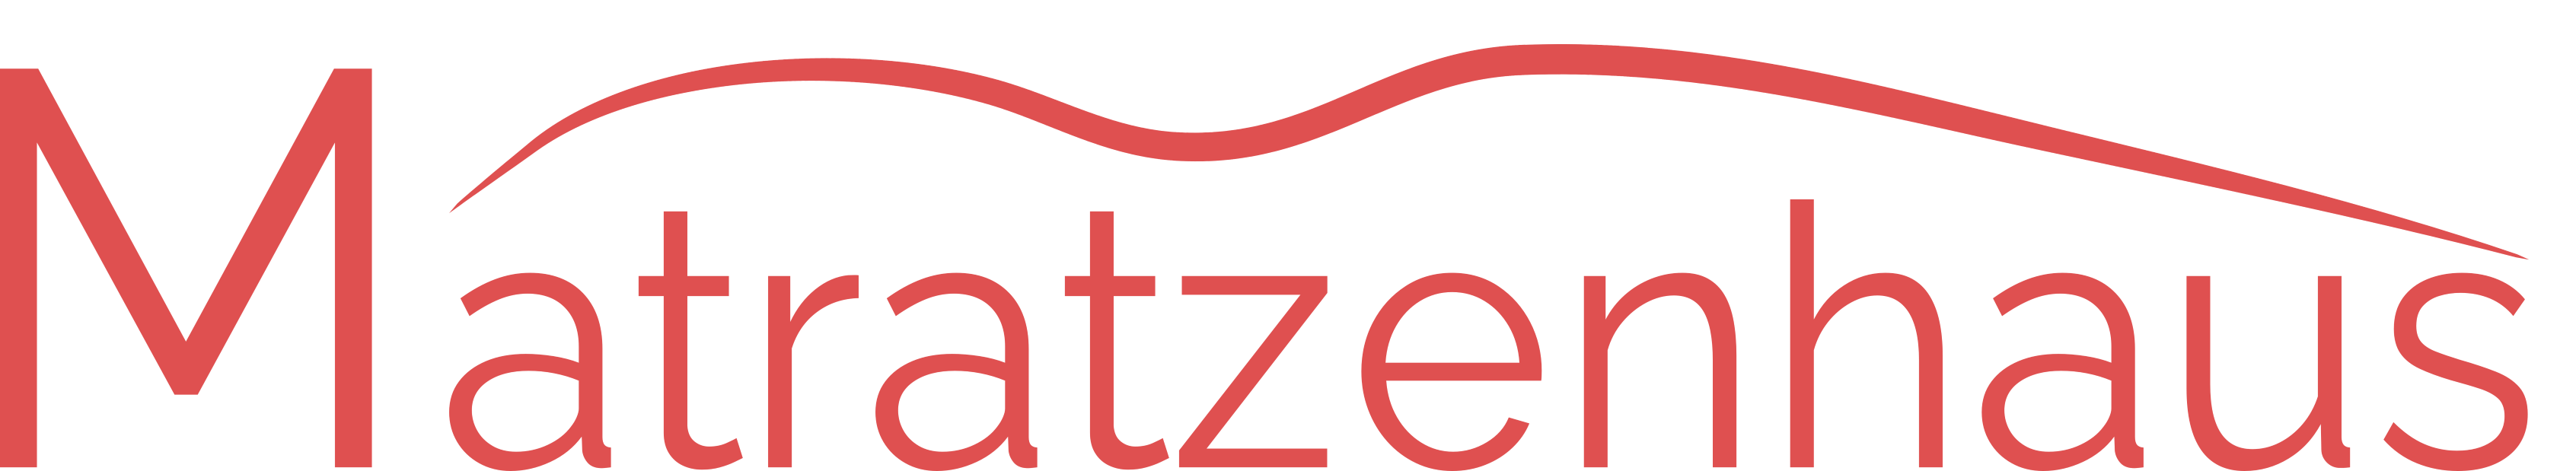 Matratzenhaus_Logo